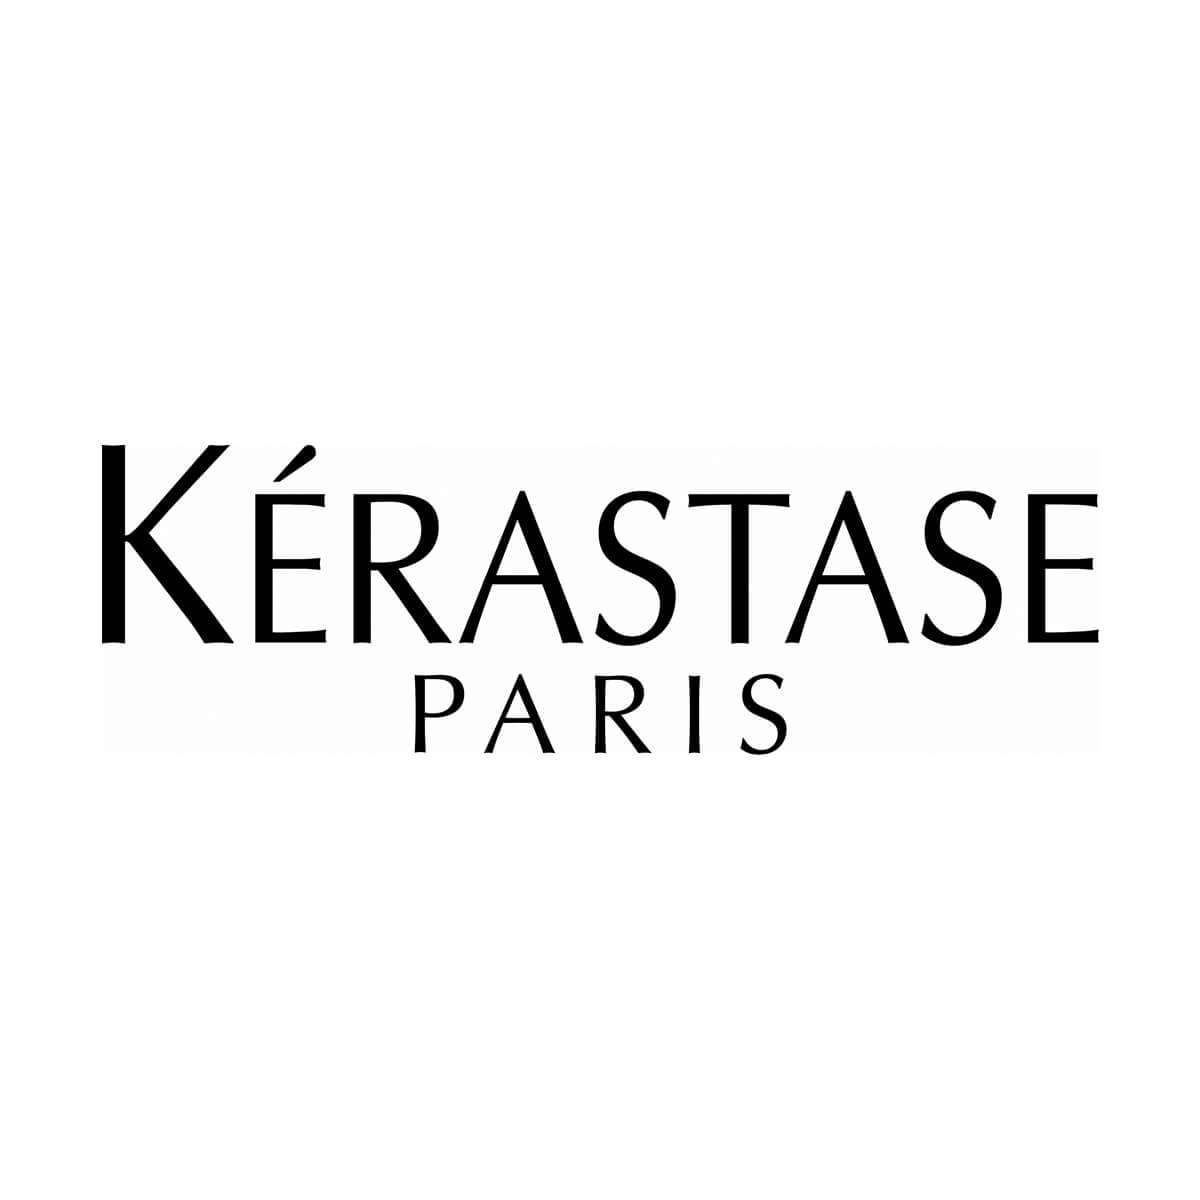 Hair Product Kerastase Paris logo